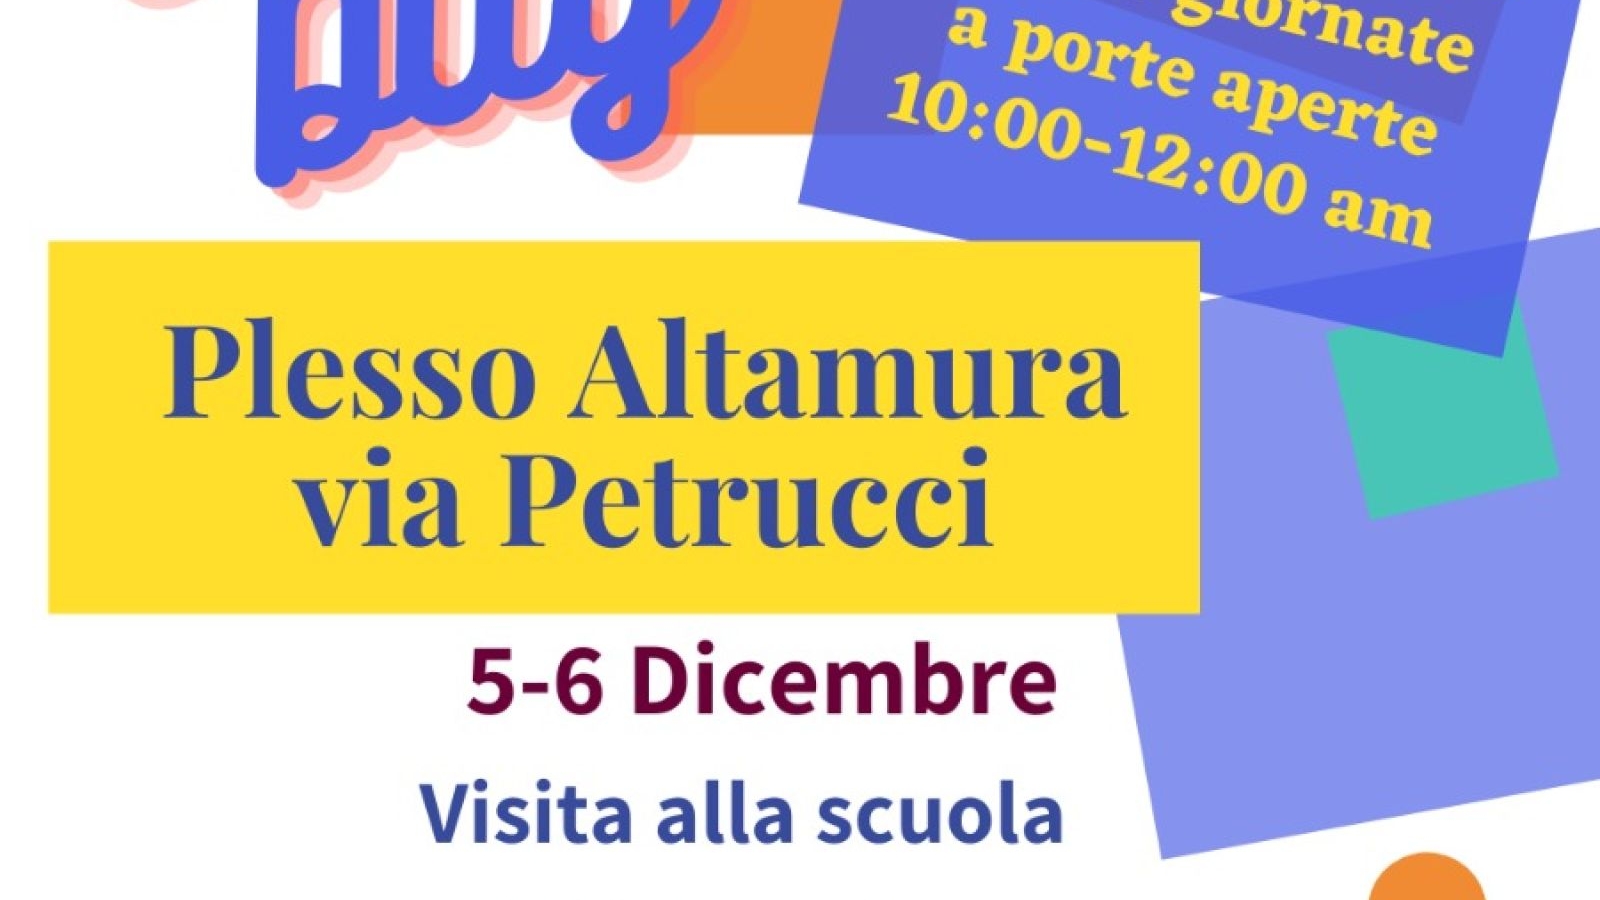 Istituto Comprensivo Santa Chiara - Pascoli - Altamura